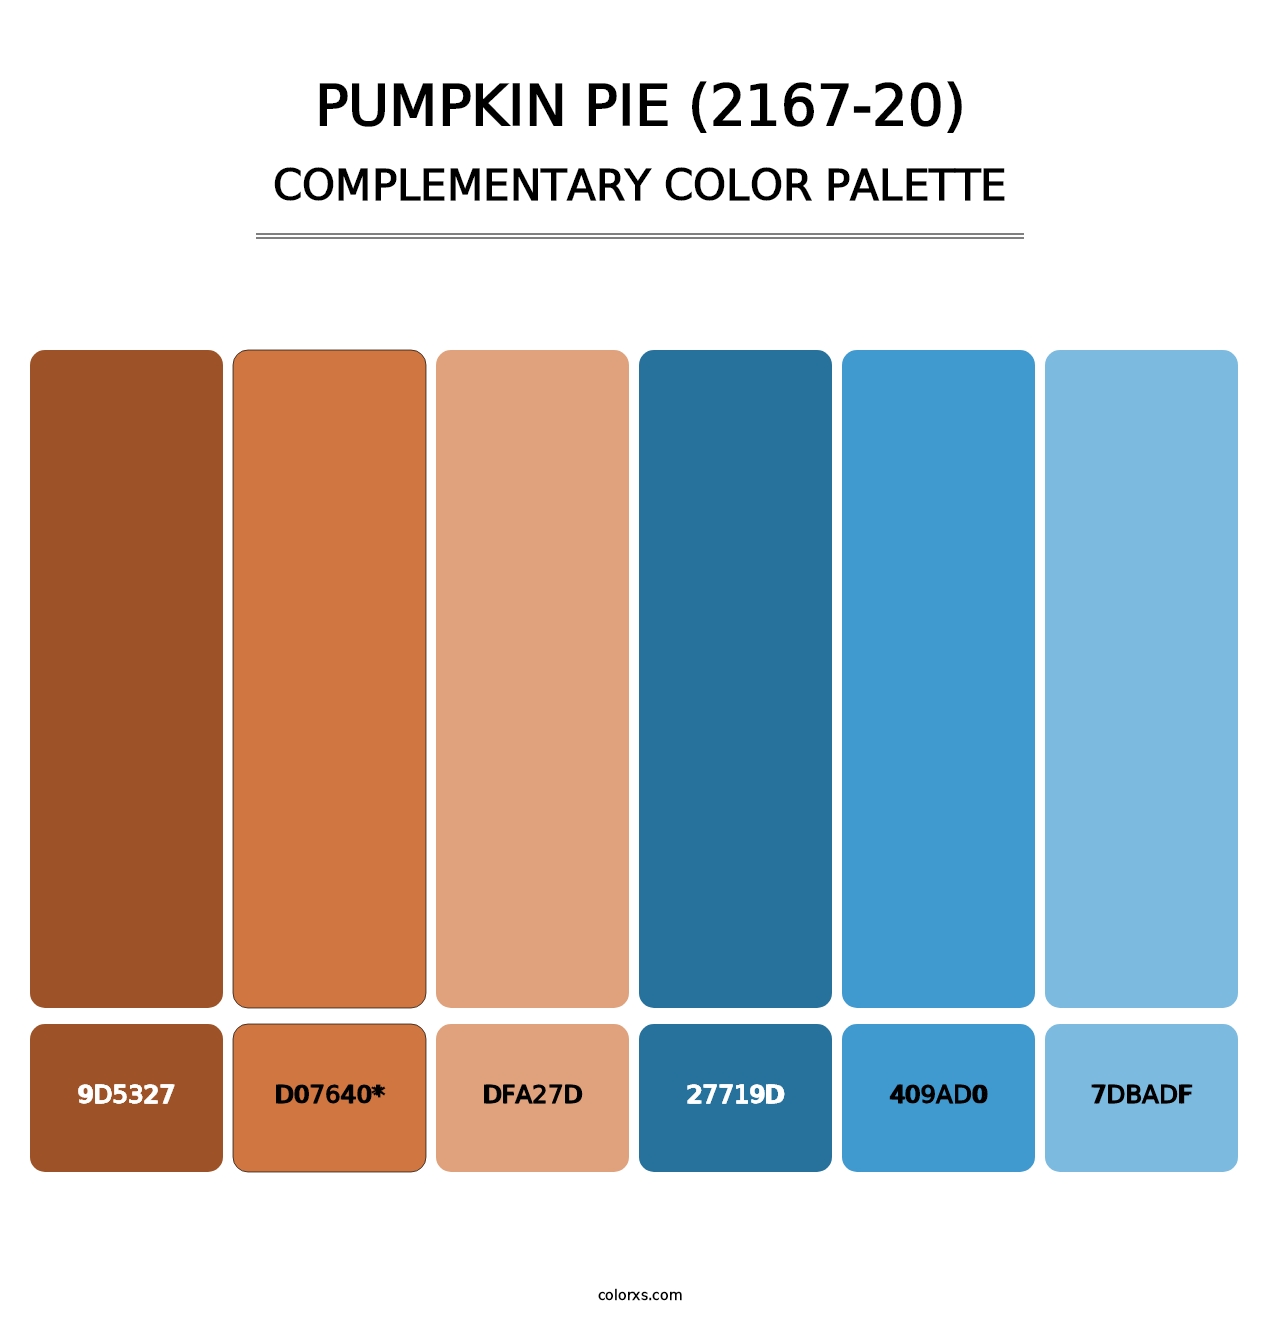 Pumpkin Pie (2167-20) - Complementary Color Palette